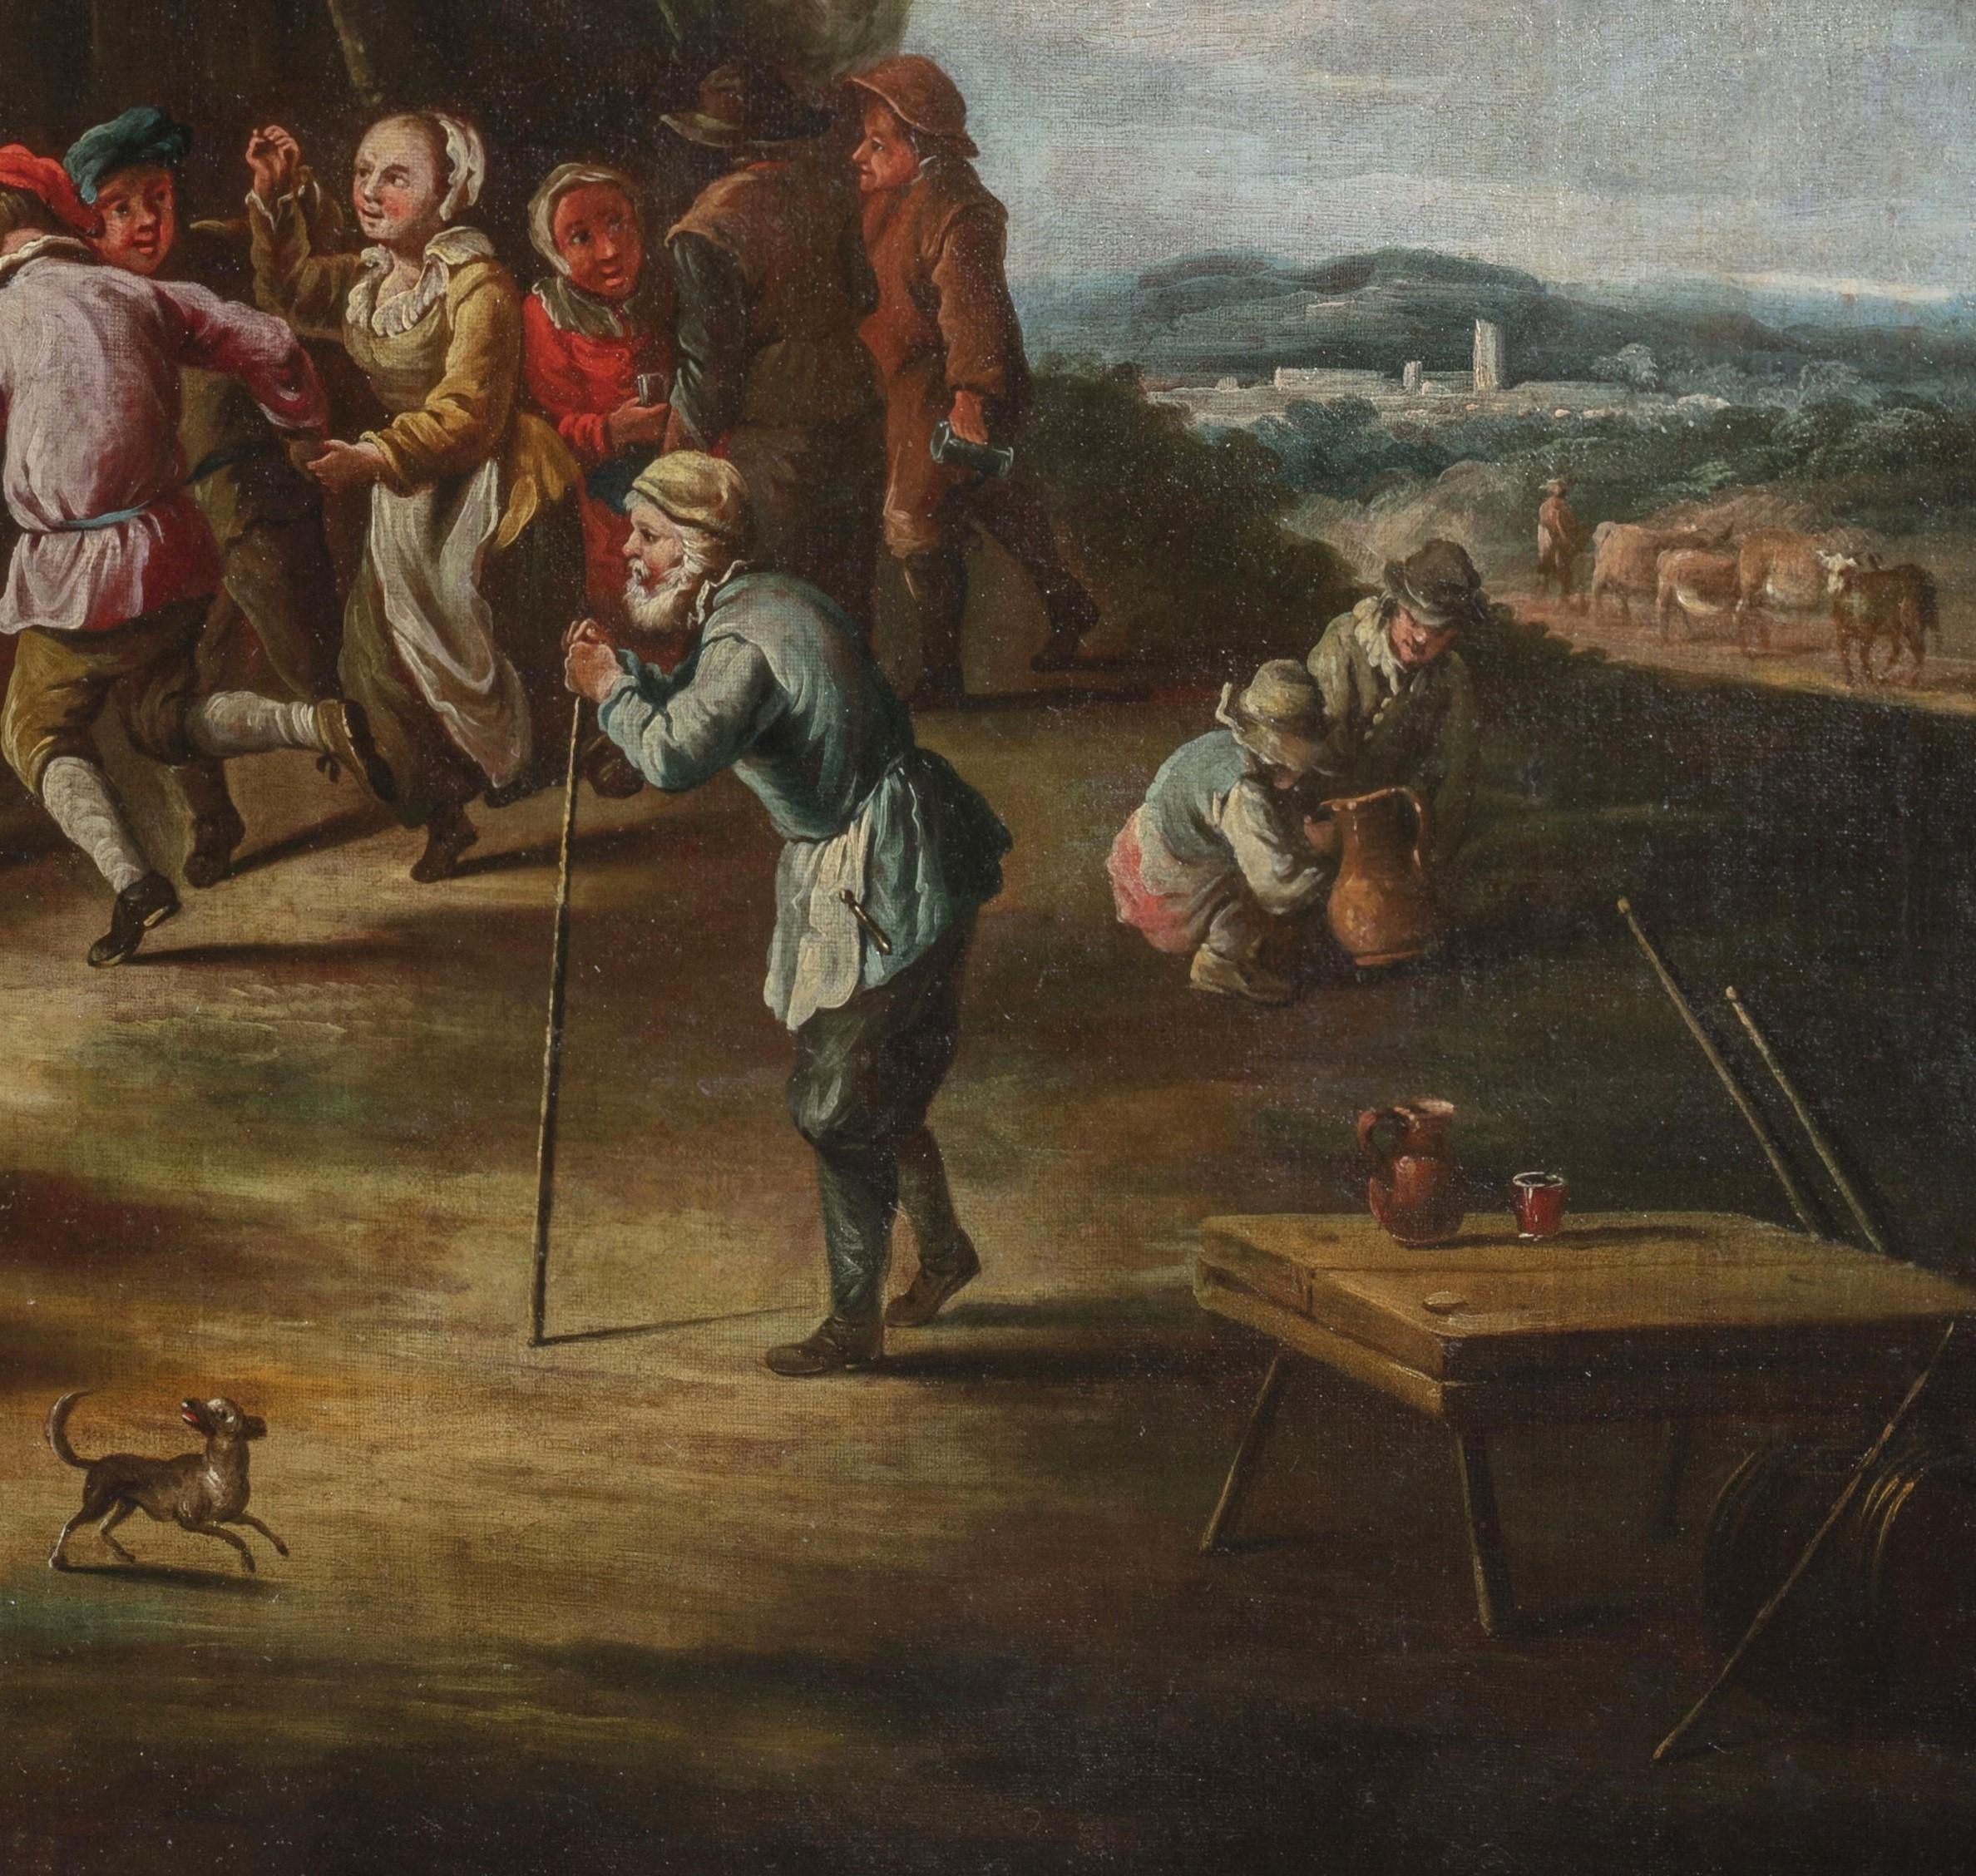 Giovanni Michele Graneri (Italien, Turin 1708-1762)
Bambocciata (Bauern tanzen vor dem Gasthaus)

Das Gemälde, das in Öl auf Leinwand gemalt wurde, zeigt einen Moment des Feierns, in dem einige Bauern oder Bürger vor einem Gasthaus tanzen und